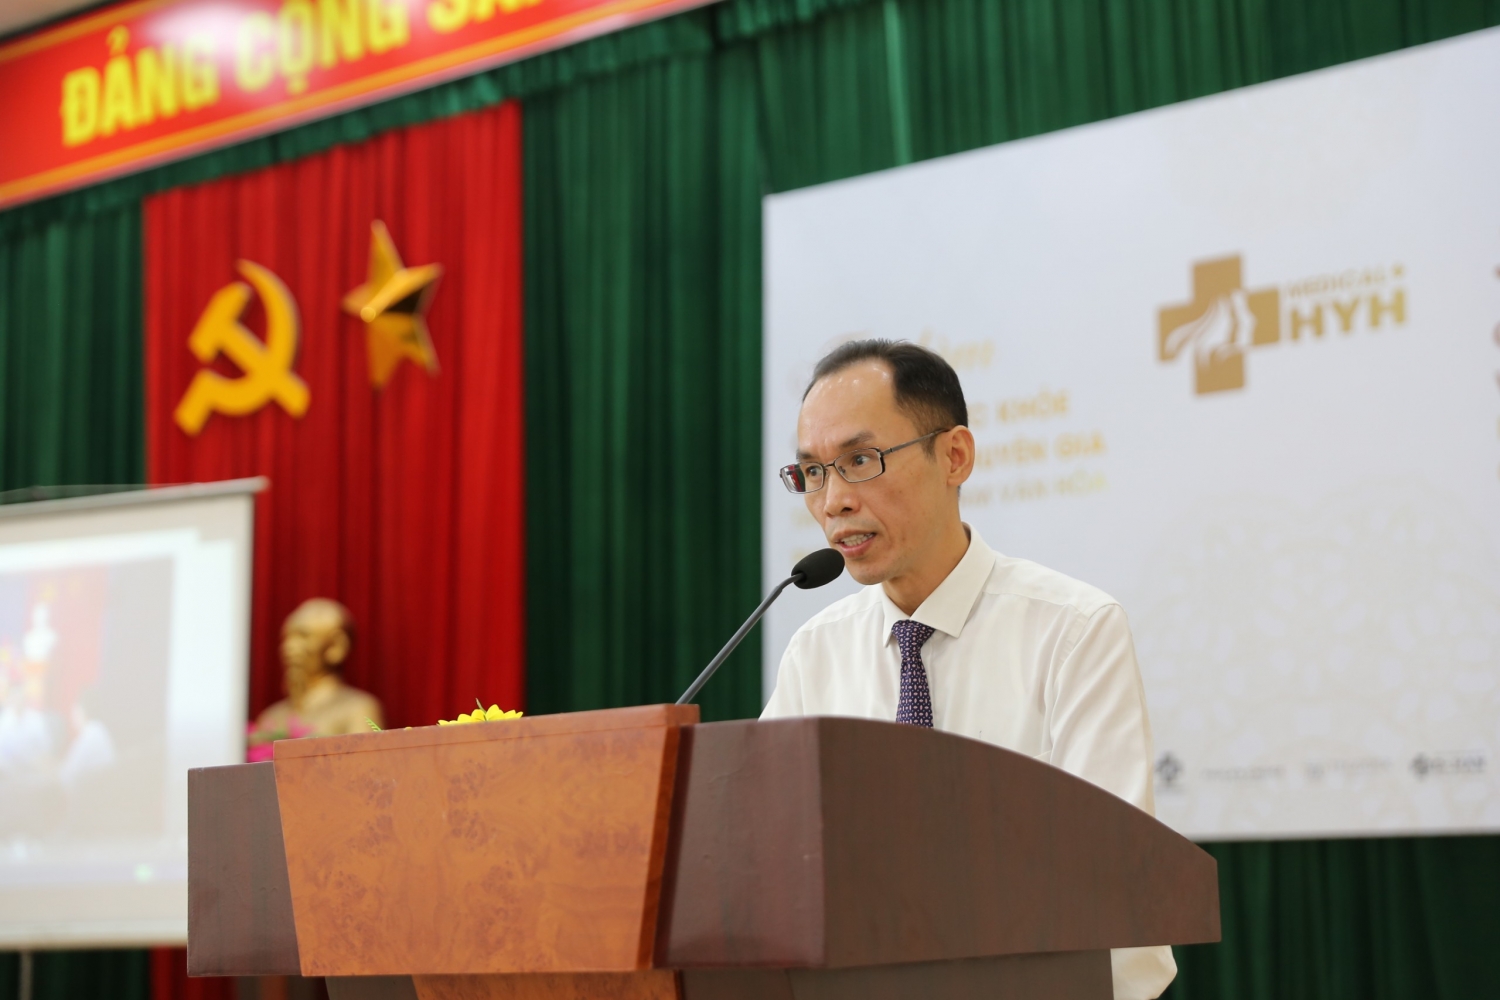 Bệnh viện Hữu Nghị Quốc tế Hà Nội ra mắt Câu lạc bộ Sức khỏe và Sắc đẹp